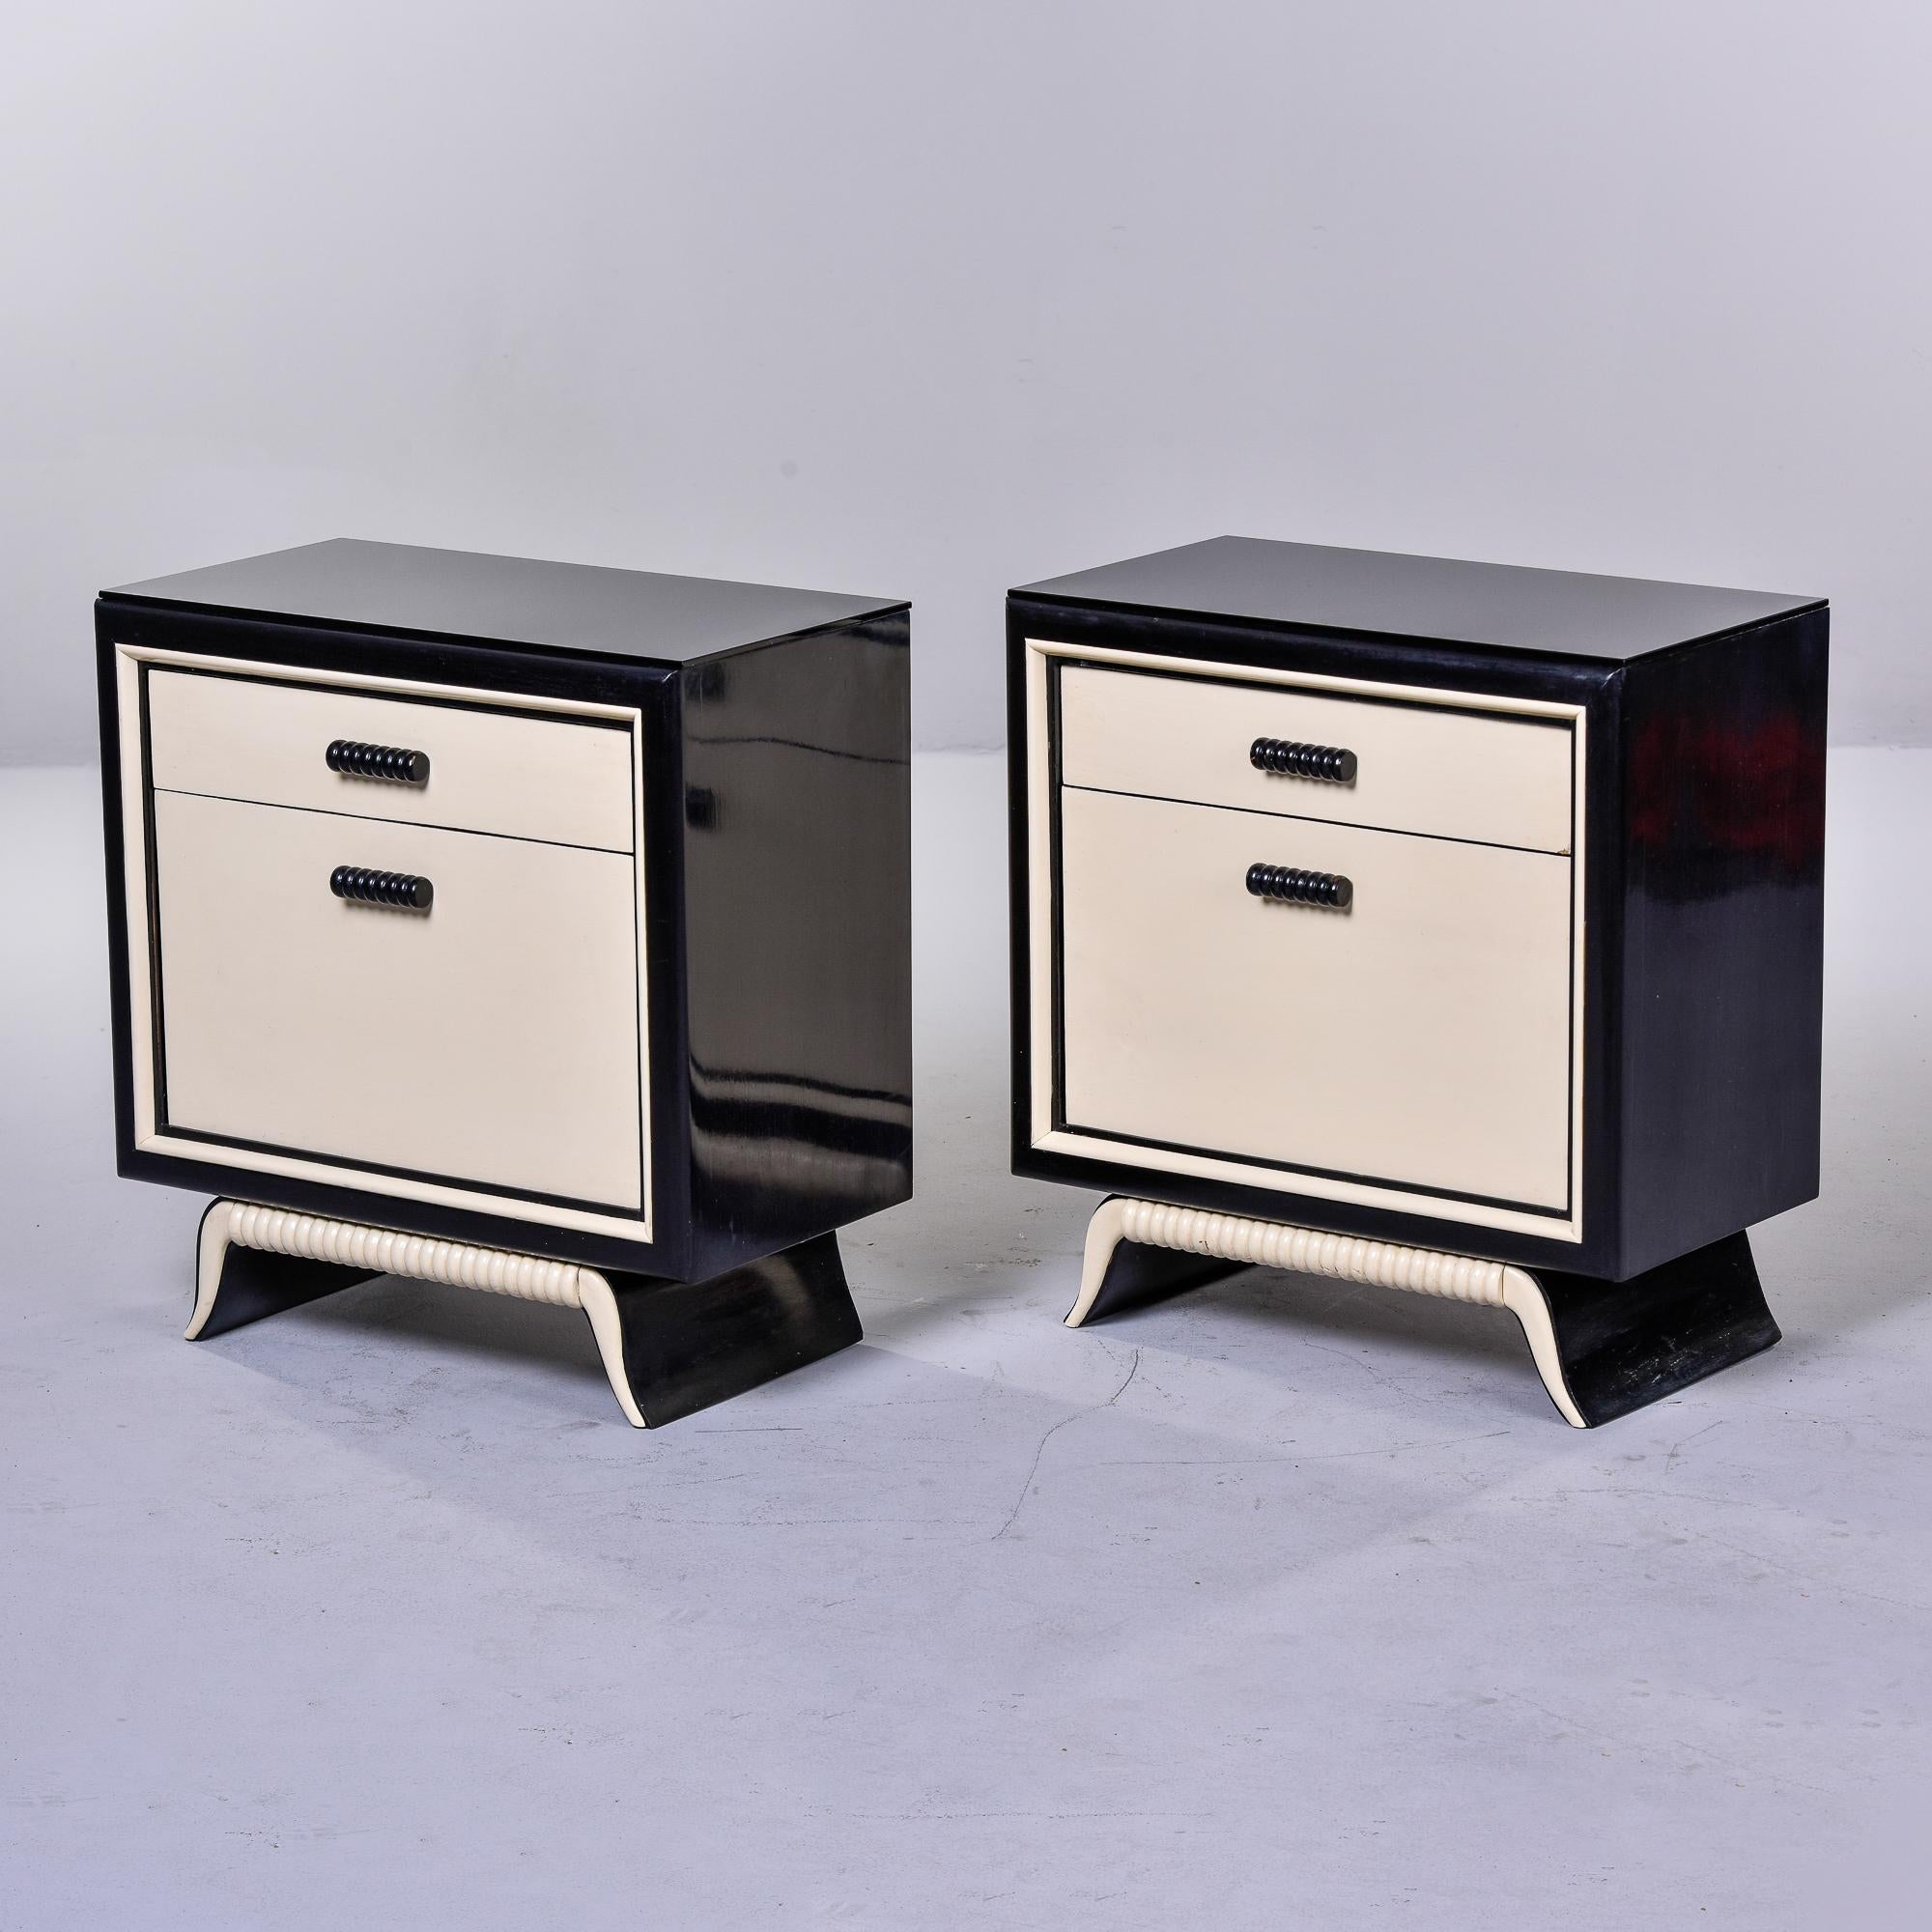 Dieses Paar Nachttische aus den 1950er Jahren wurde in Italien gefunden und ist schwarz und cremefarben lackiert. Jeder Schrank verfügt über eine funktionale obere Schublade und ein unteres Staufach mit einer Klappe zum Herunterziehen. Der